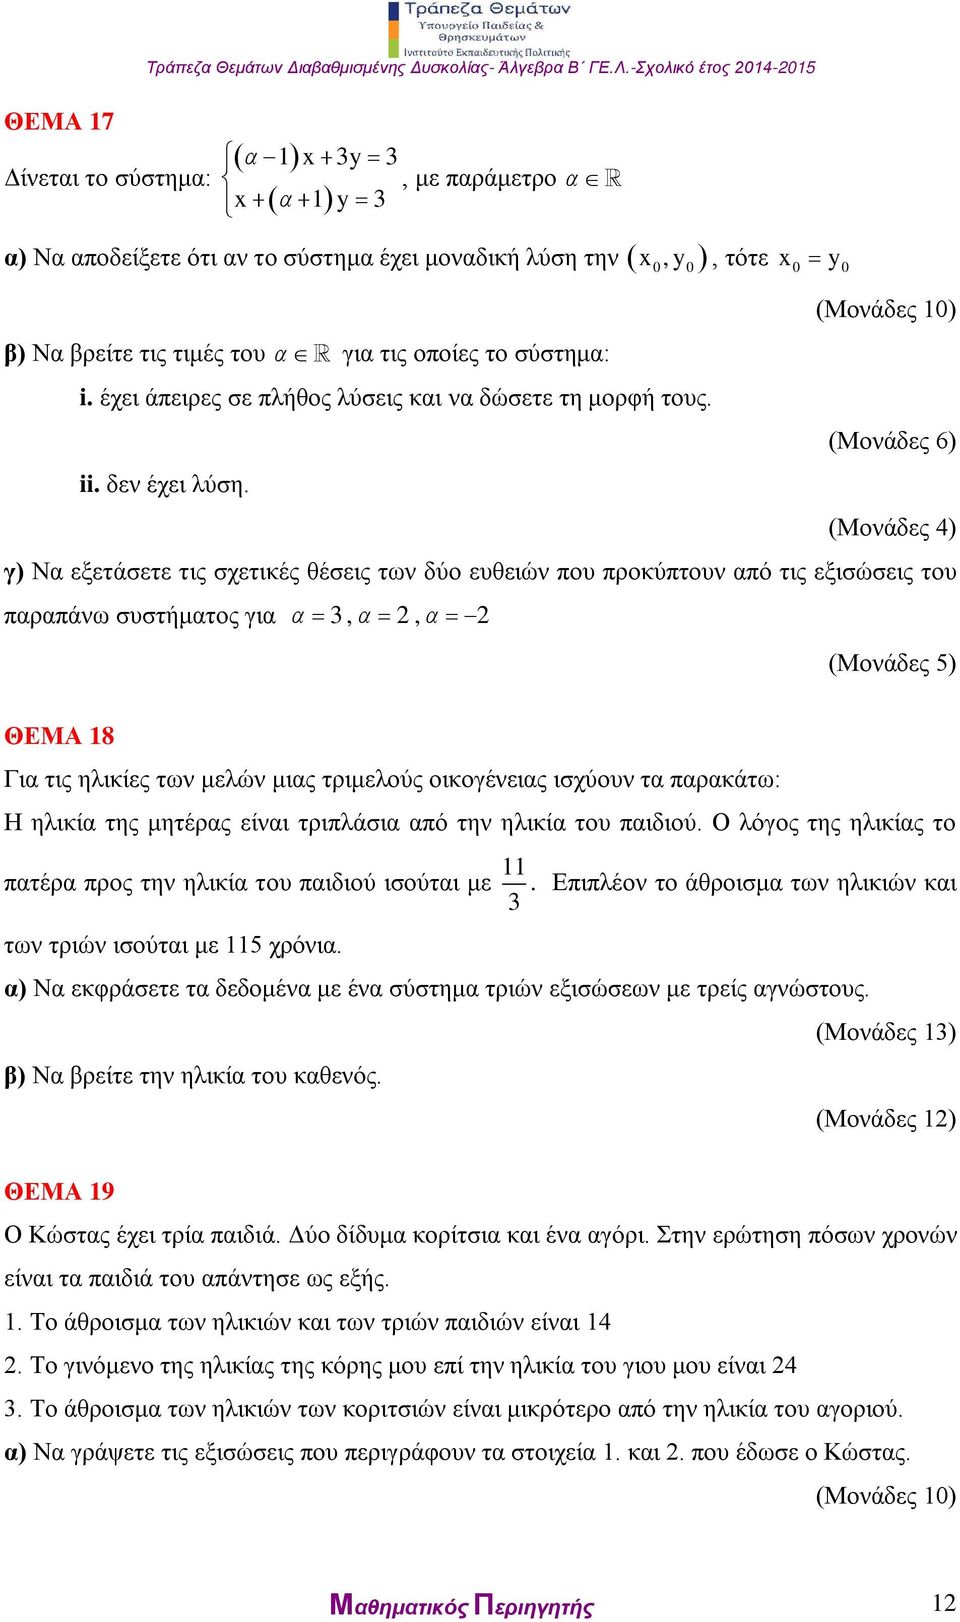 x, y, τότε x0 y0 (Μονάδες 6) (Μονάδες 4) γ) Να εξετάσετε τις σχετικές θέσεις των δύο ευθειών που προκύπτουν από τις εξισώσεις του παραπάνω συστήματος για 3,, (Μονάδες 5) ΘΕΜΑ 18 Για τις ηλικίες των